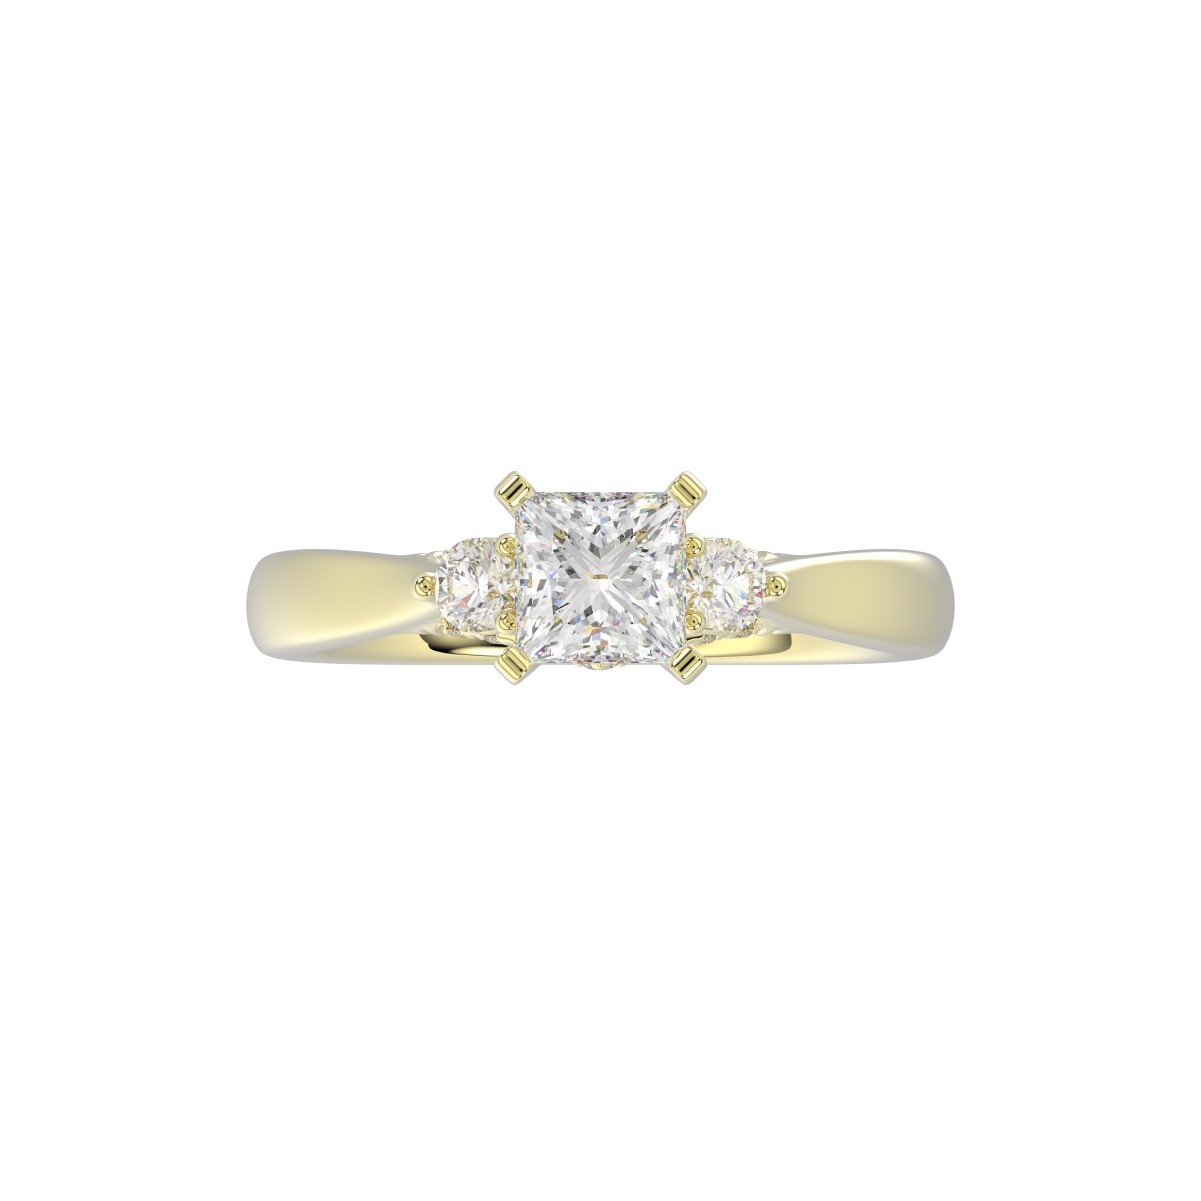 18K YELLOW GOLD 1/4CT ROUND/PRINCESS DIAMOND LADIES RING(CENTER STONE PRINCESS DIAMOND 3/4CT)